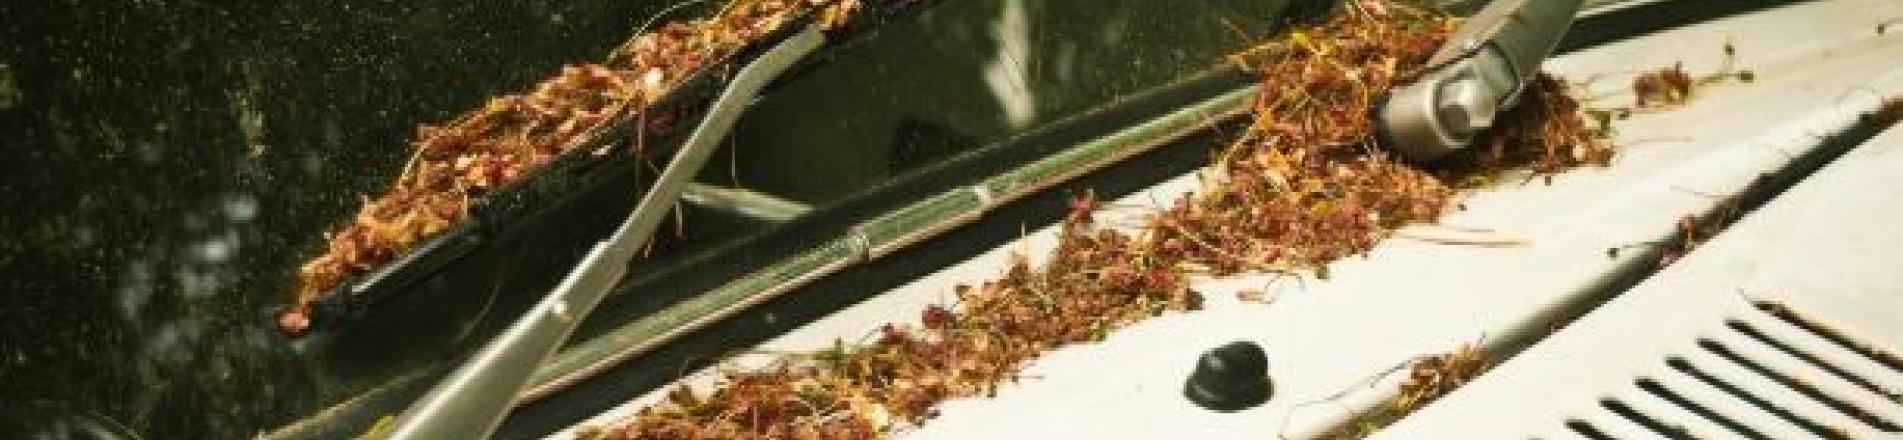 Qué es el filtro de polen y cómo actúa en nuestro coche?